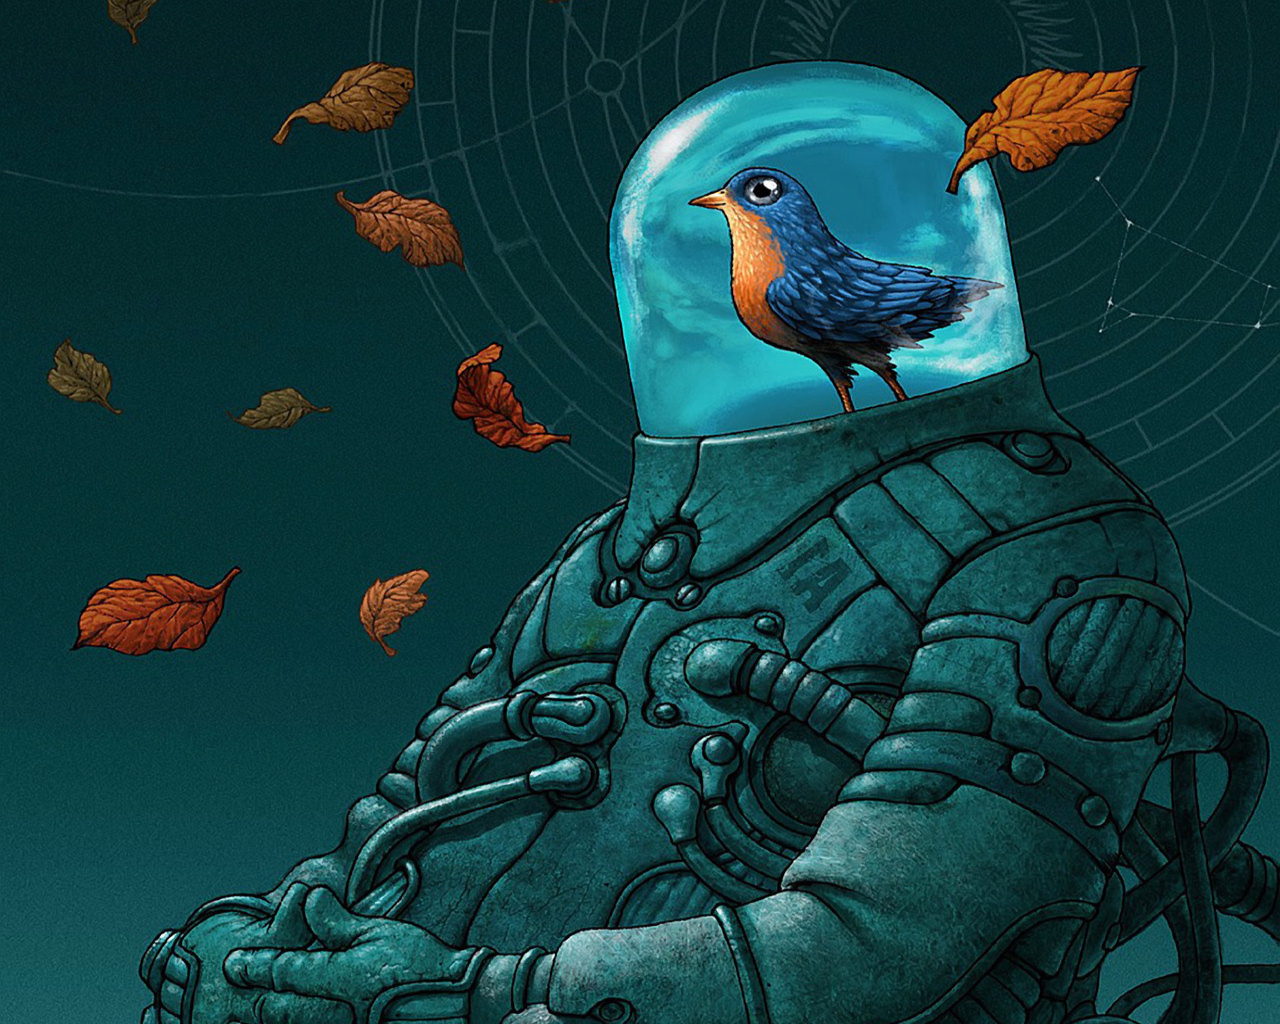 Bird in space suit